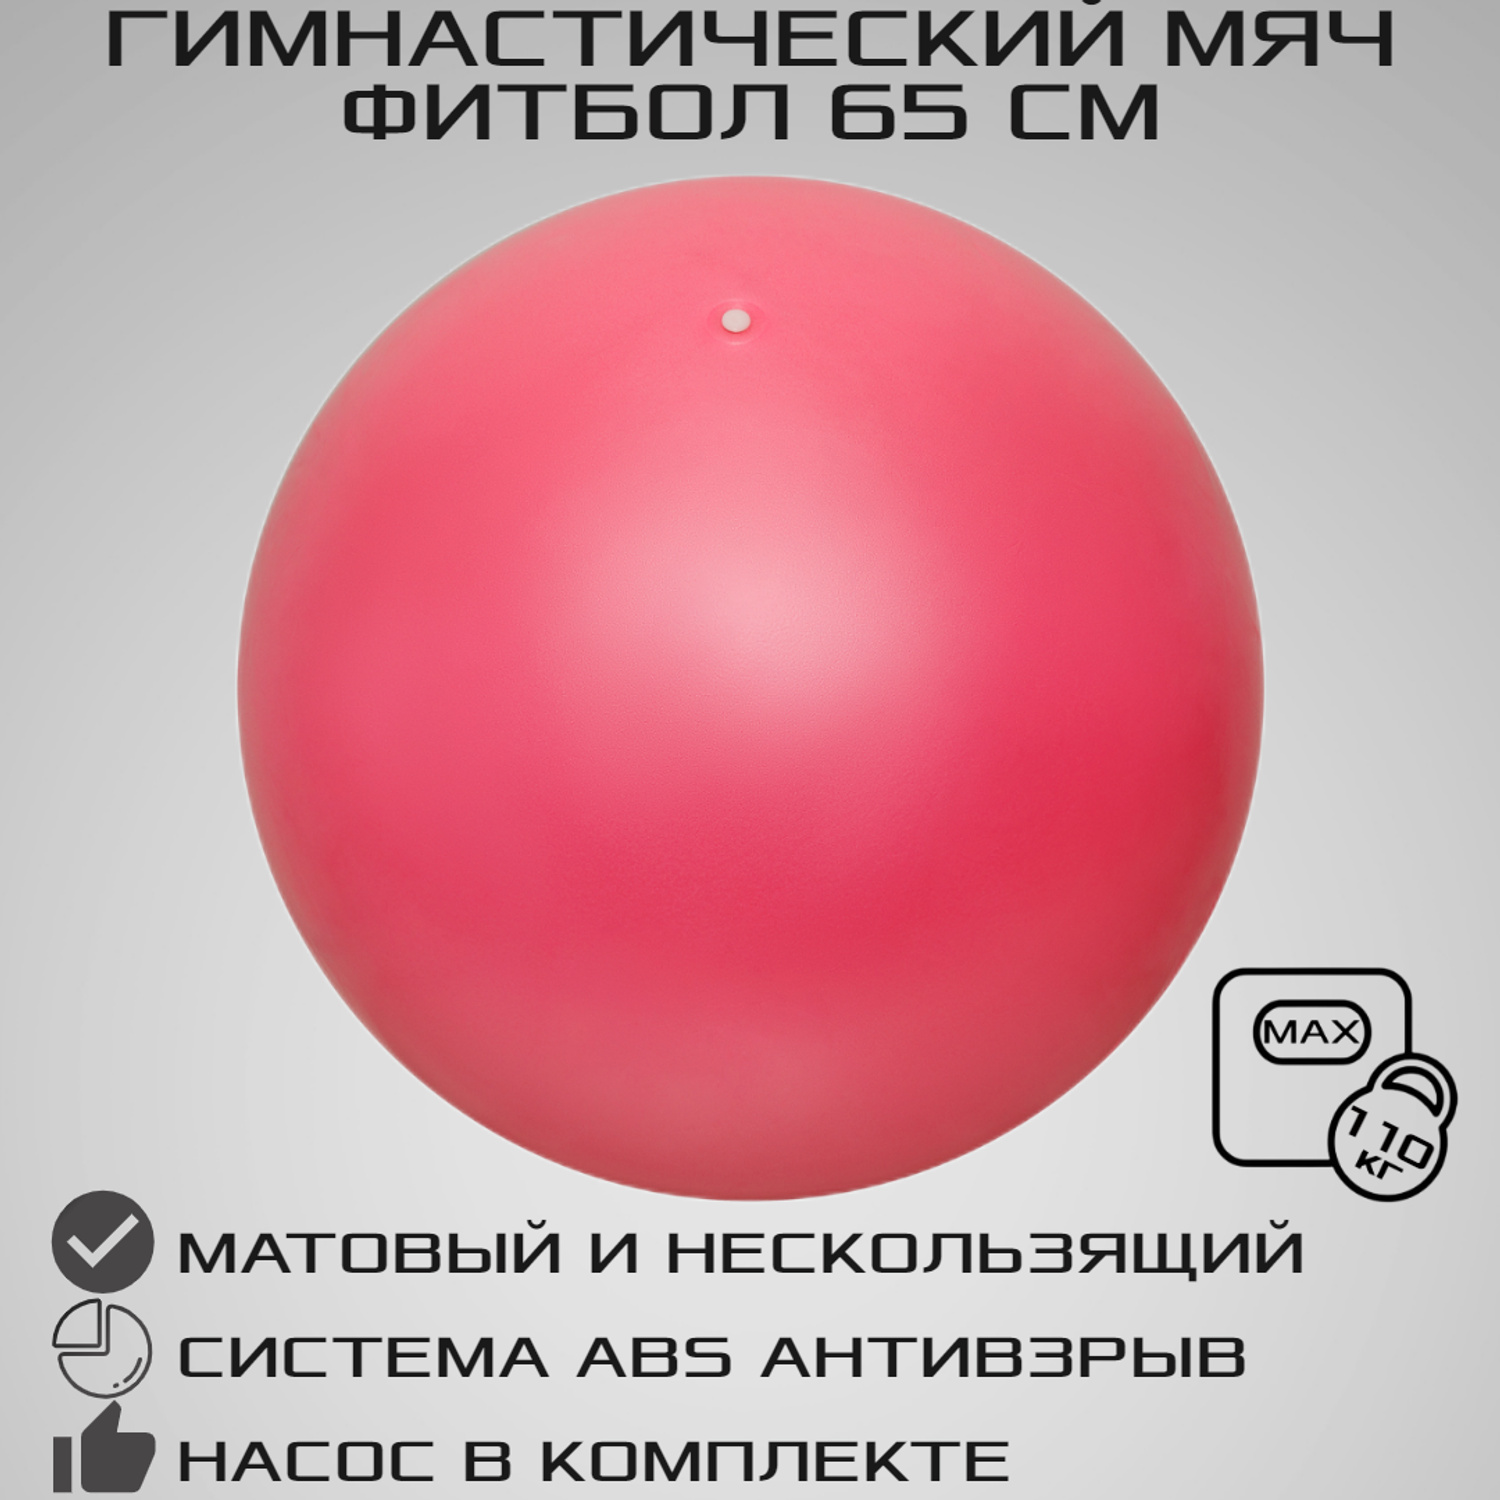 Фитбол STRONG BODY 65 см ABS антивзрыв розовый для фитнеса Насос в комплекте - фото 1